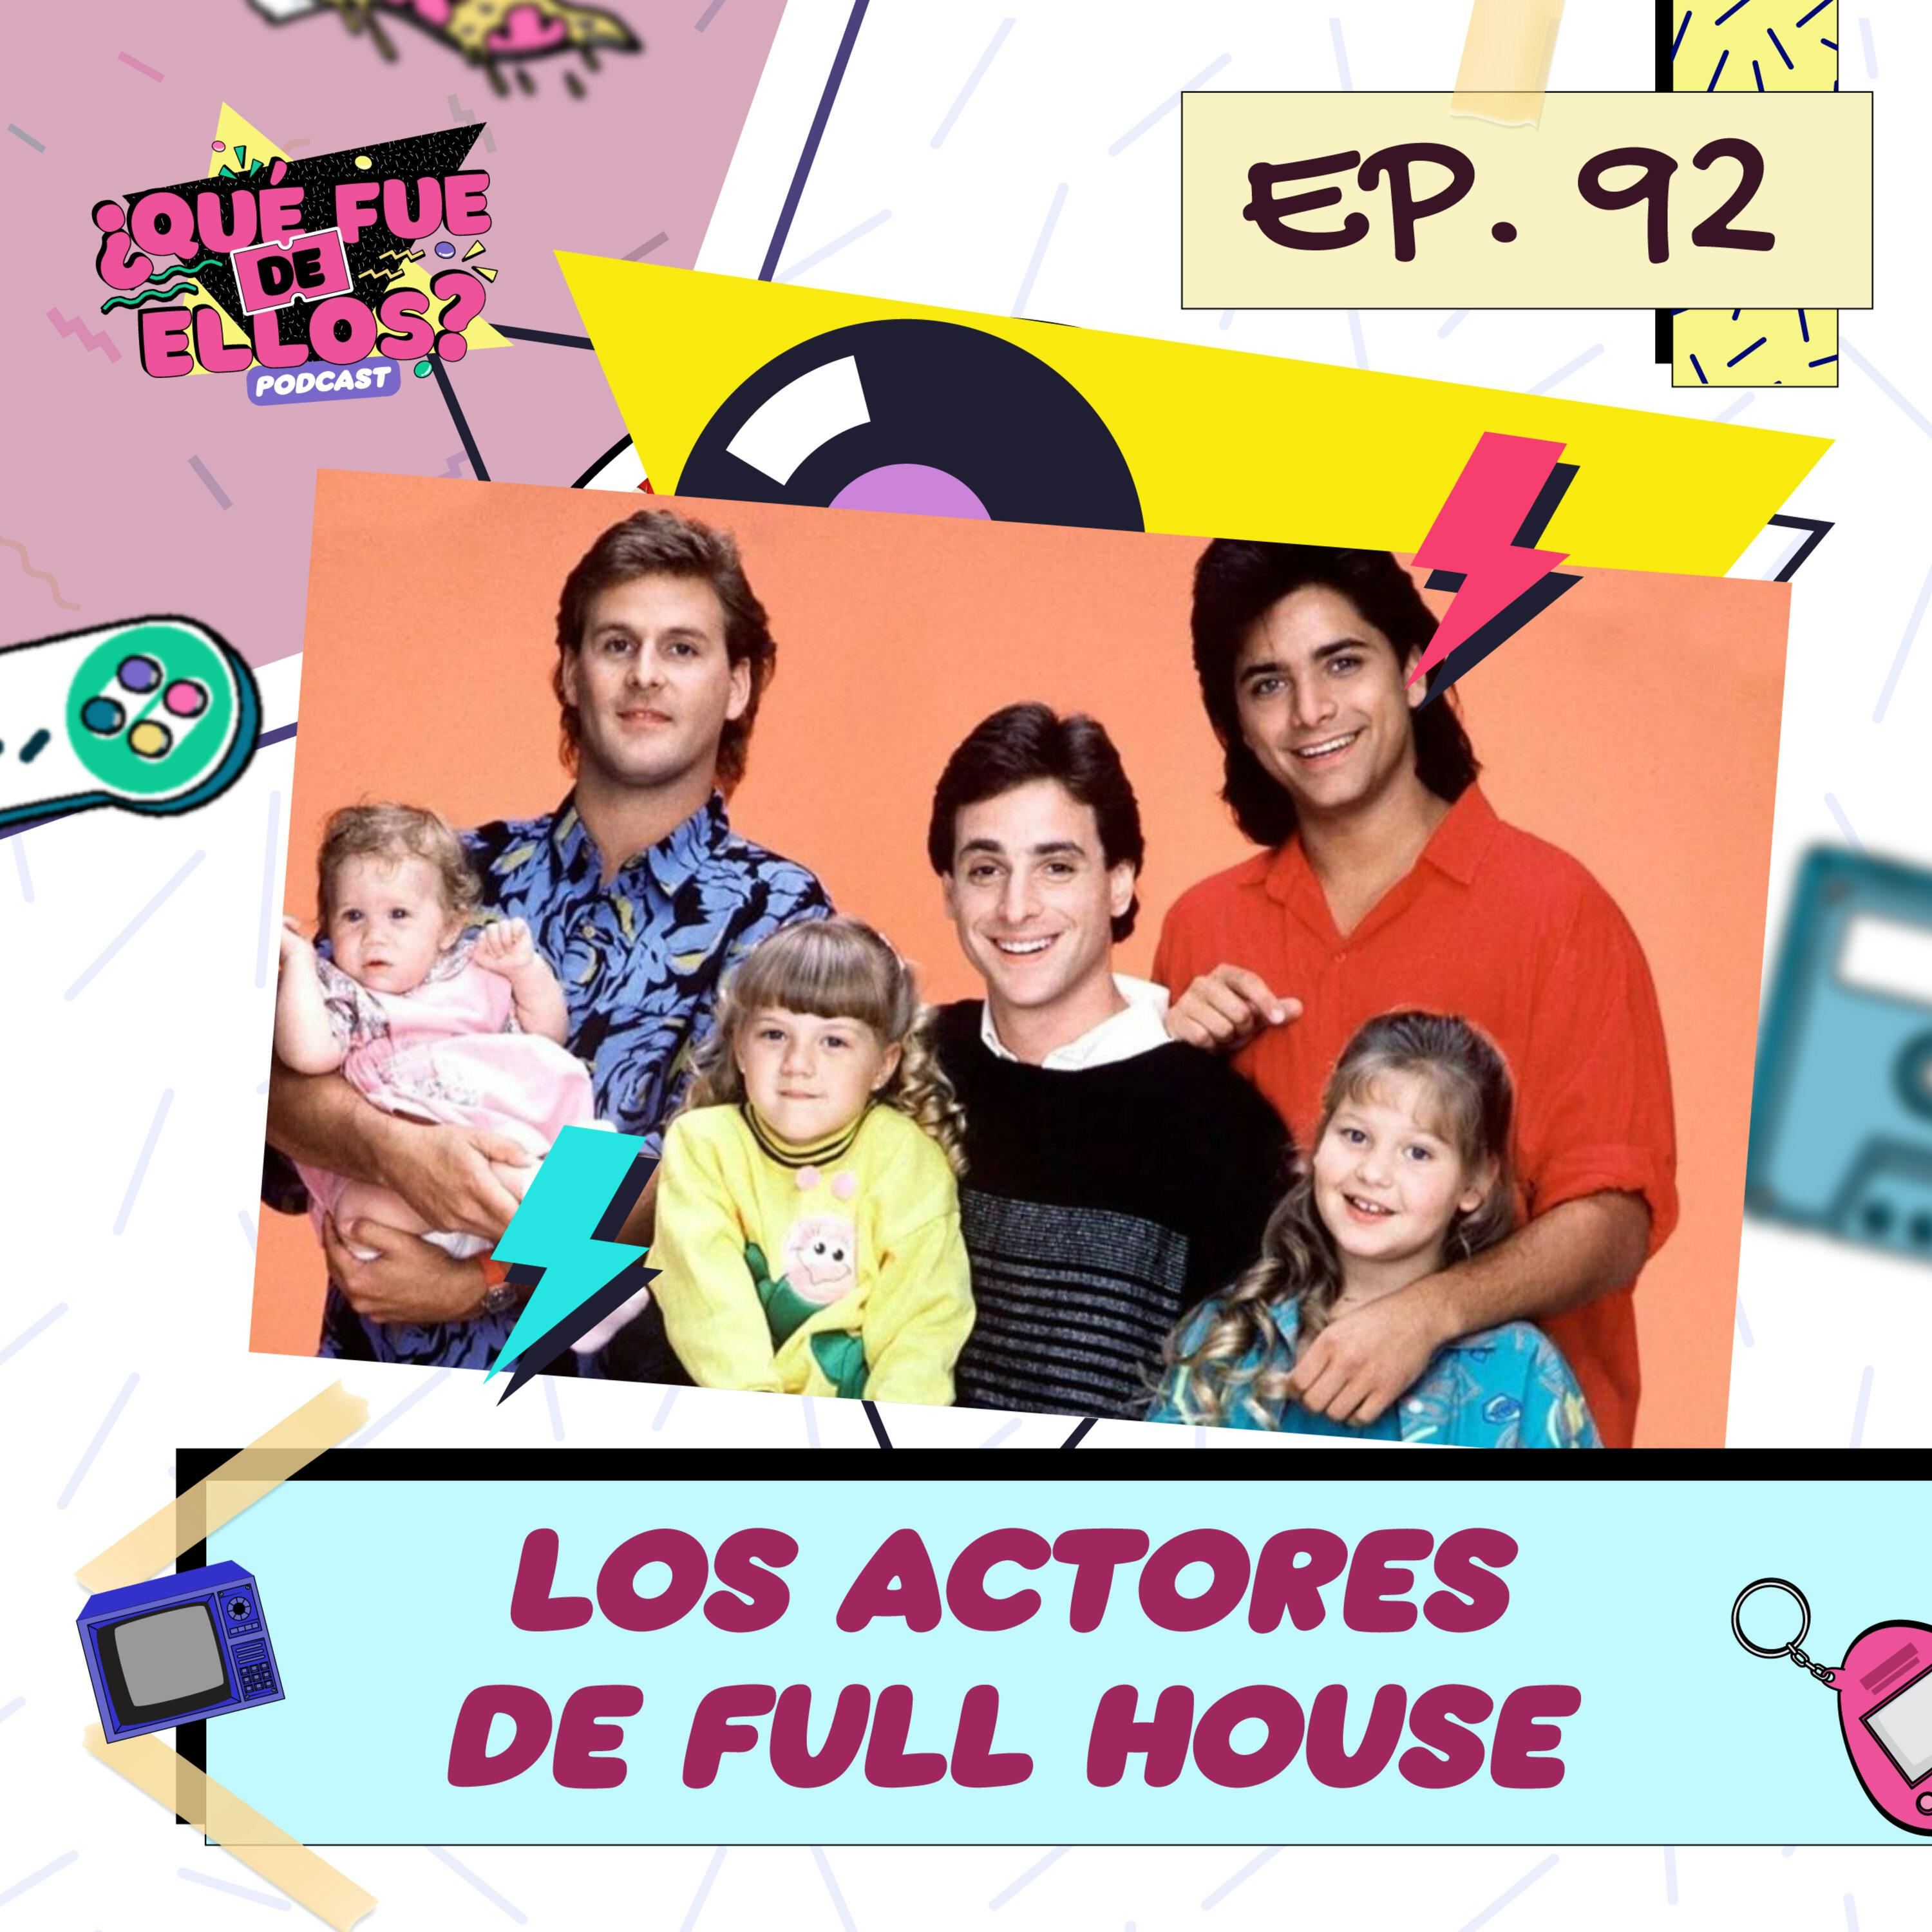 Ep92 Los Actores De Full House ¿qué Fue De Ellos Podcast Podtail